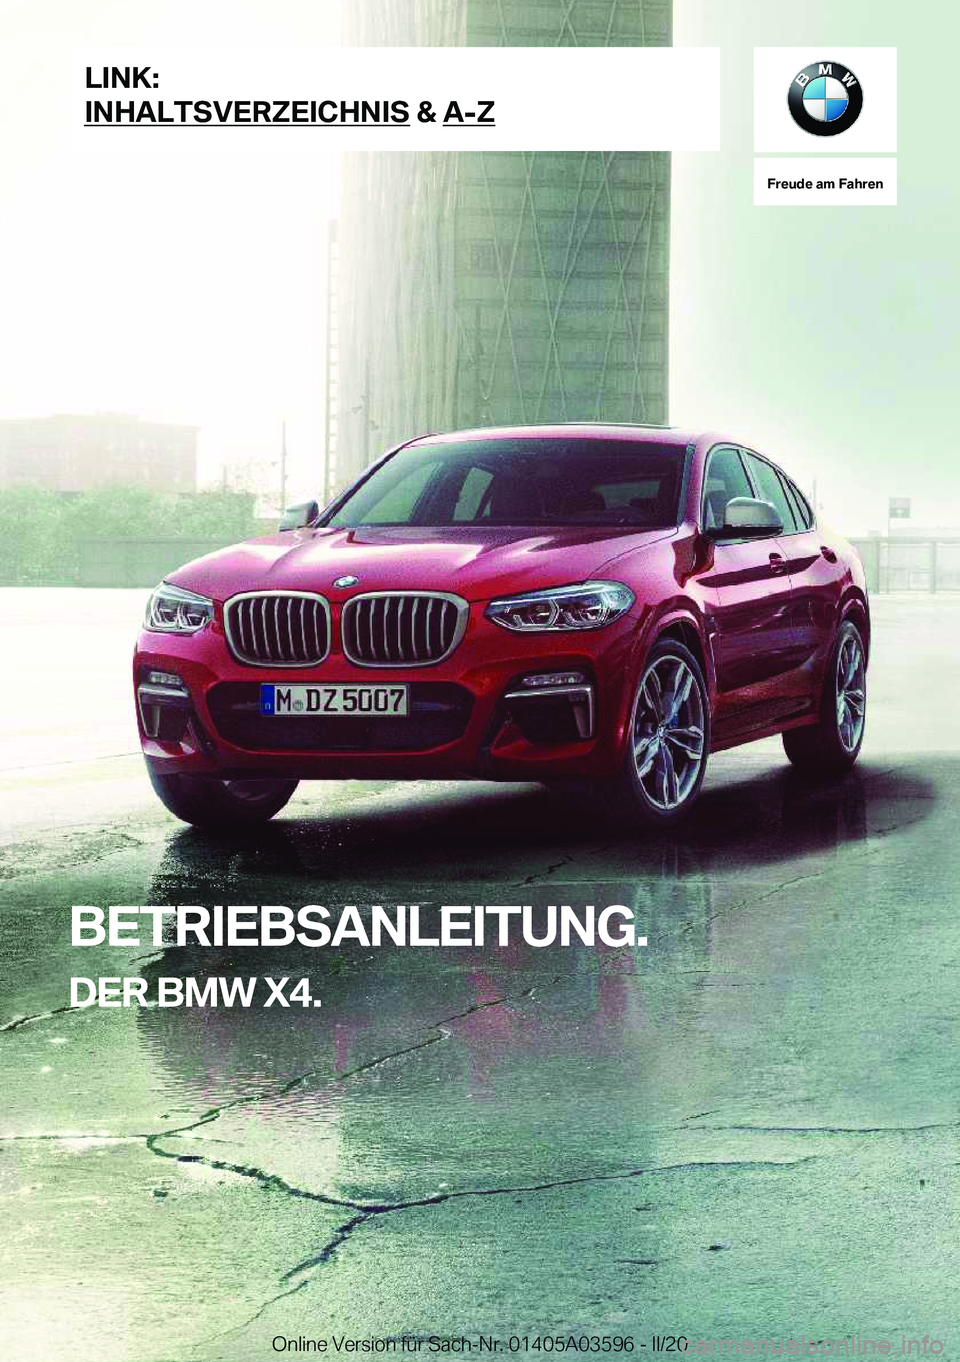 BMW X4 2020  Betriebsanleitungen (in German) �F�r�e�u�d�e��a�m��F�a�h�r�e�n
�B�E�T�R�I�E�B�S�A�N�L�E�I�T�U�N�G�.�D�E�R��B�M�W��X�4�.�L�I�N�K�:
�I�N�H�A�L�T�S�V�E�R�Z�E�I�C�H�N�I�S��&��A�-�Z�O�n�l�i�n�e��V�e�r�s�i�o�n��f�